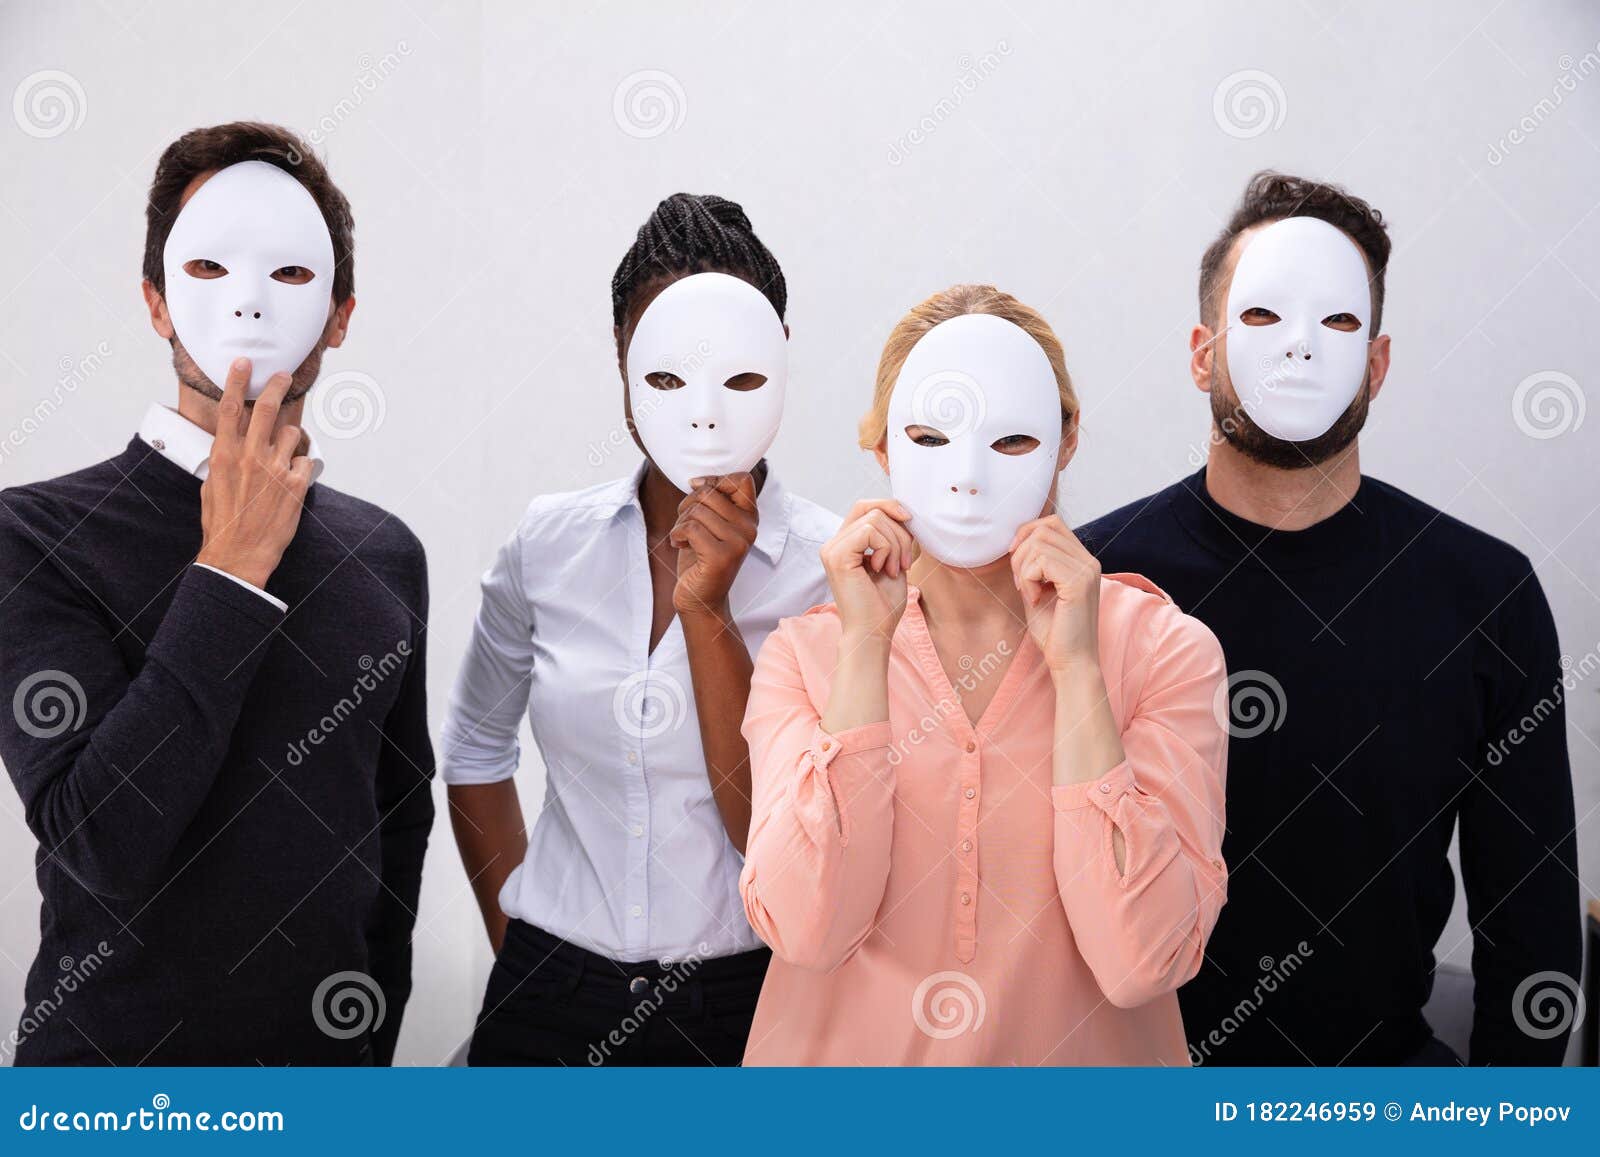 Grupo De Personas Con Máscaras Blancas Imagen de archivo - Imagen de ...